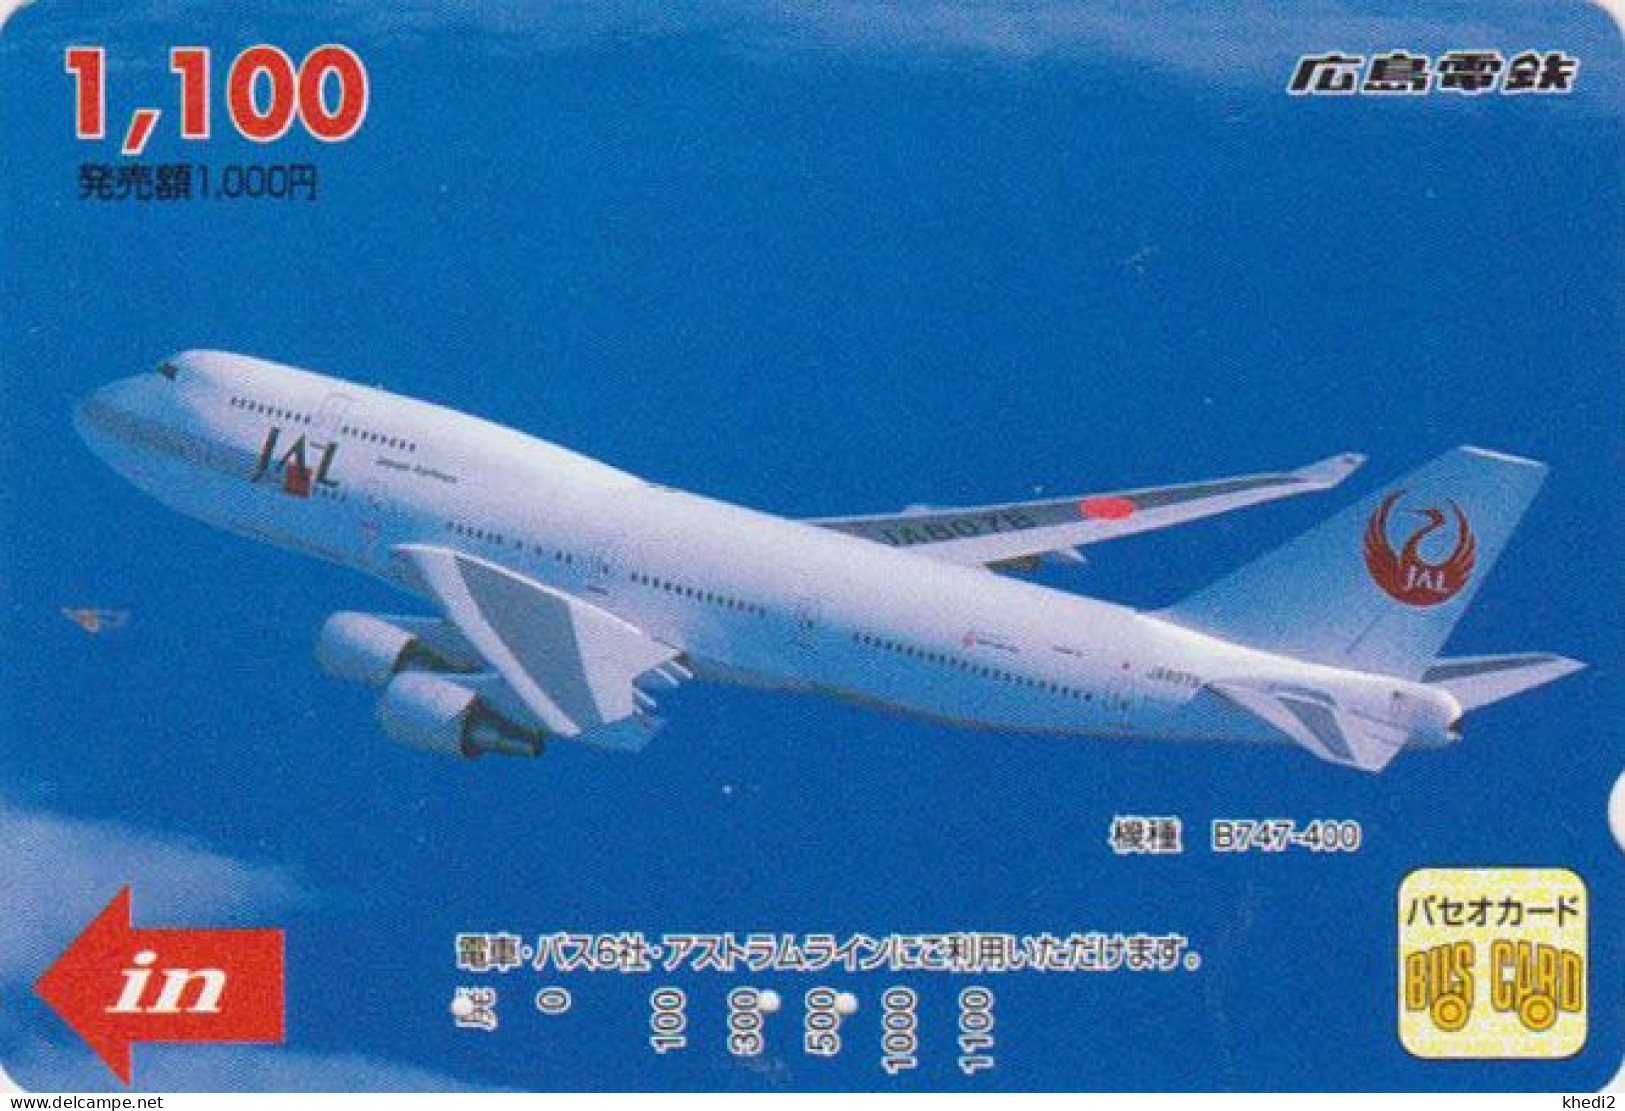 Carte Prépayée JAPON - AVION JAPAN AIRLINES - JAL Prepaid Prepaid Bus Card / V1 - Hiro 2403 - Avions